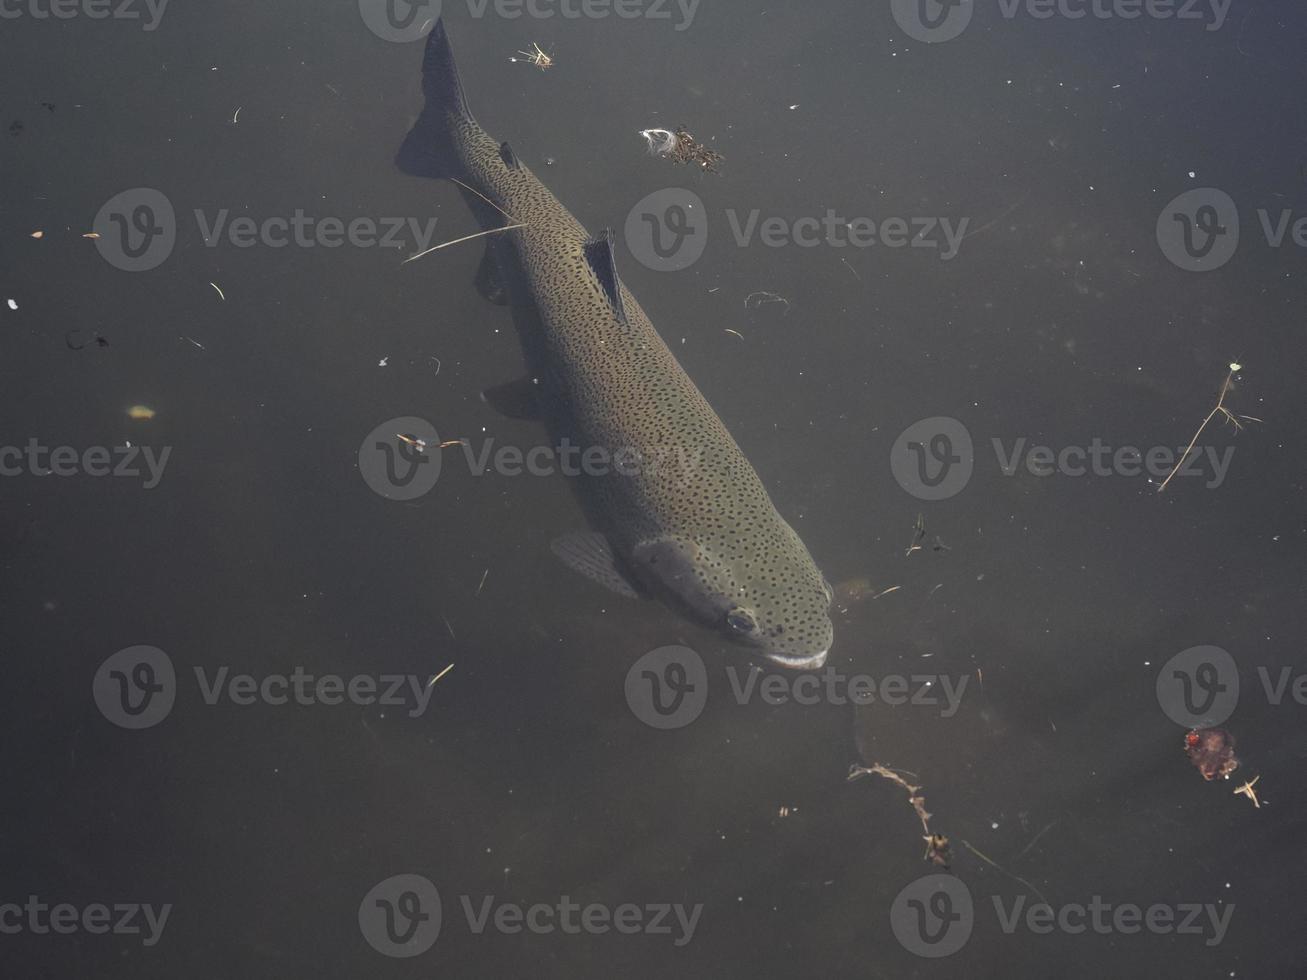 truite dans un lac sous l'eau photo